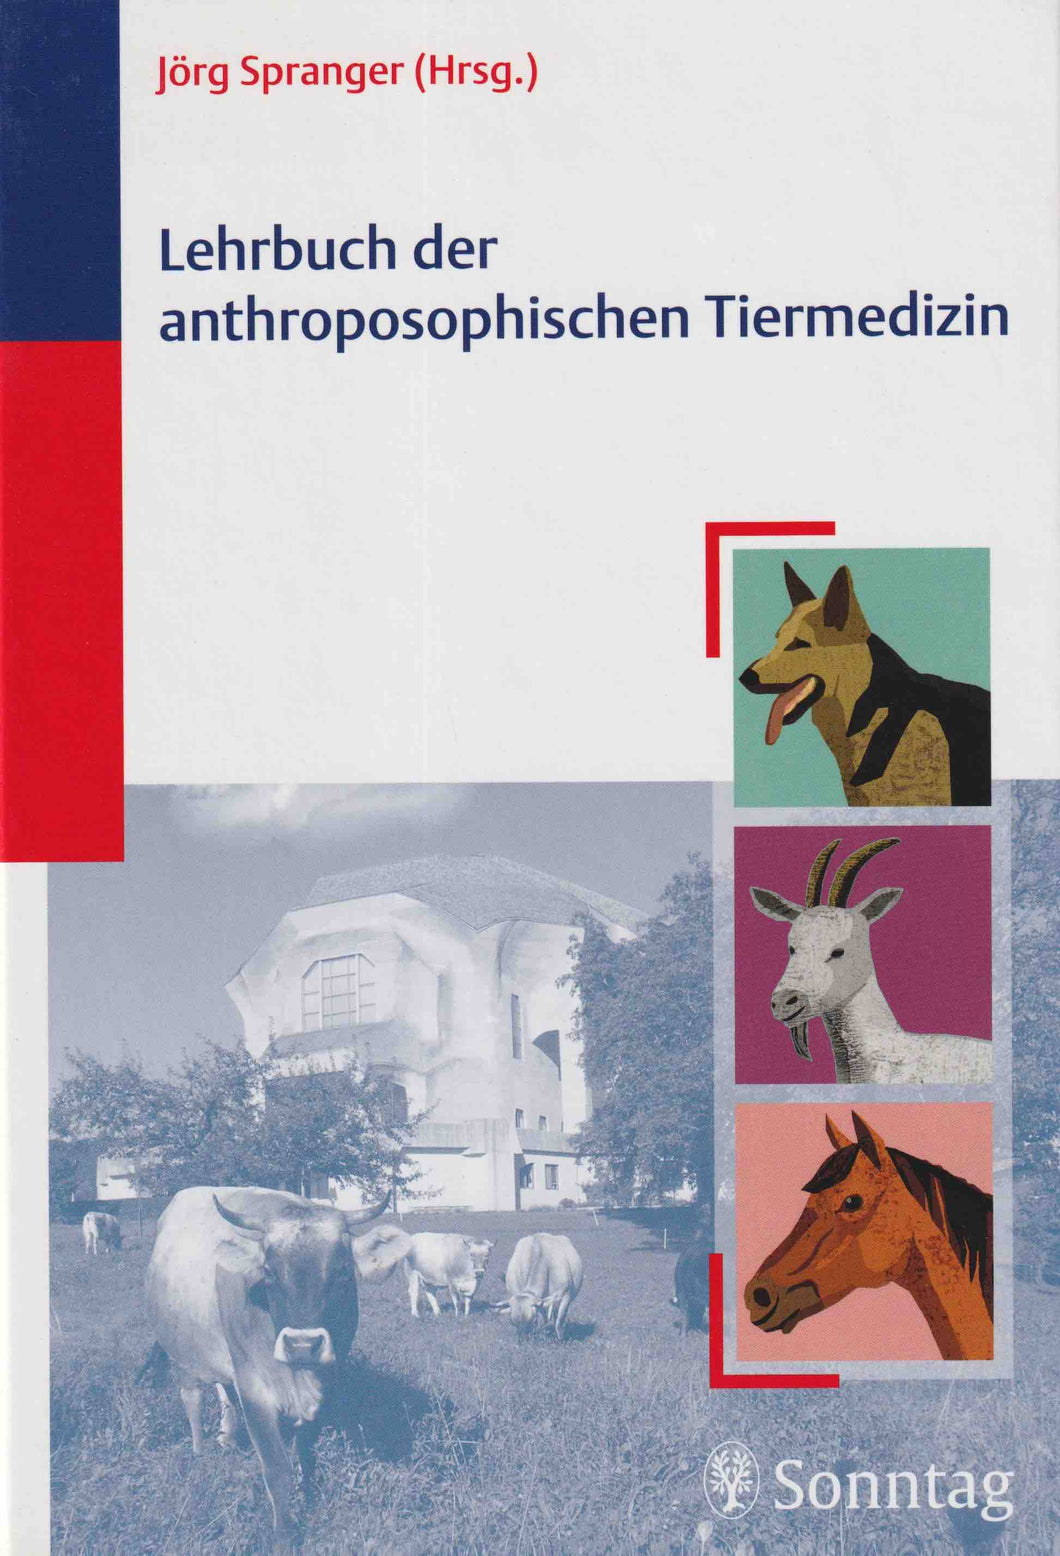 Lehrbuch der anthroposophischen Tiermedizin